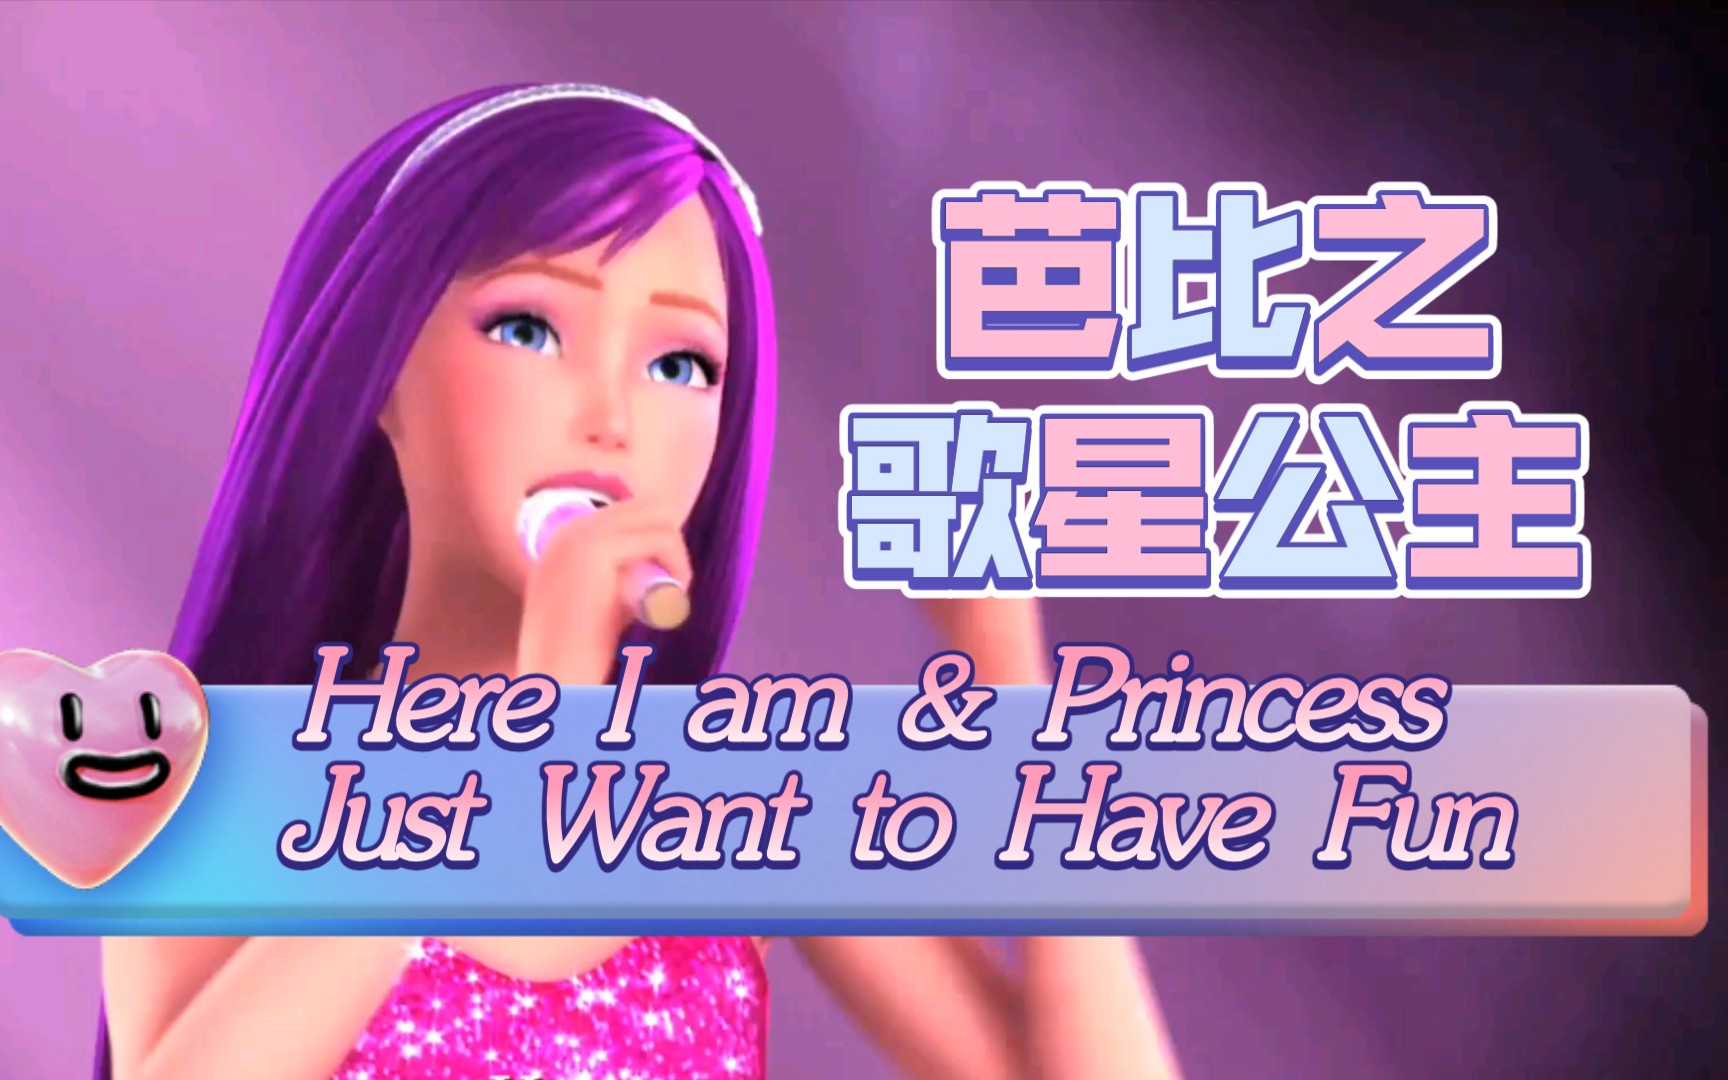 Barbie芭比公主系列电影 - 爱贝亲子网